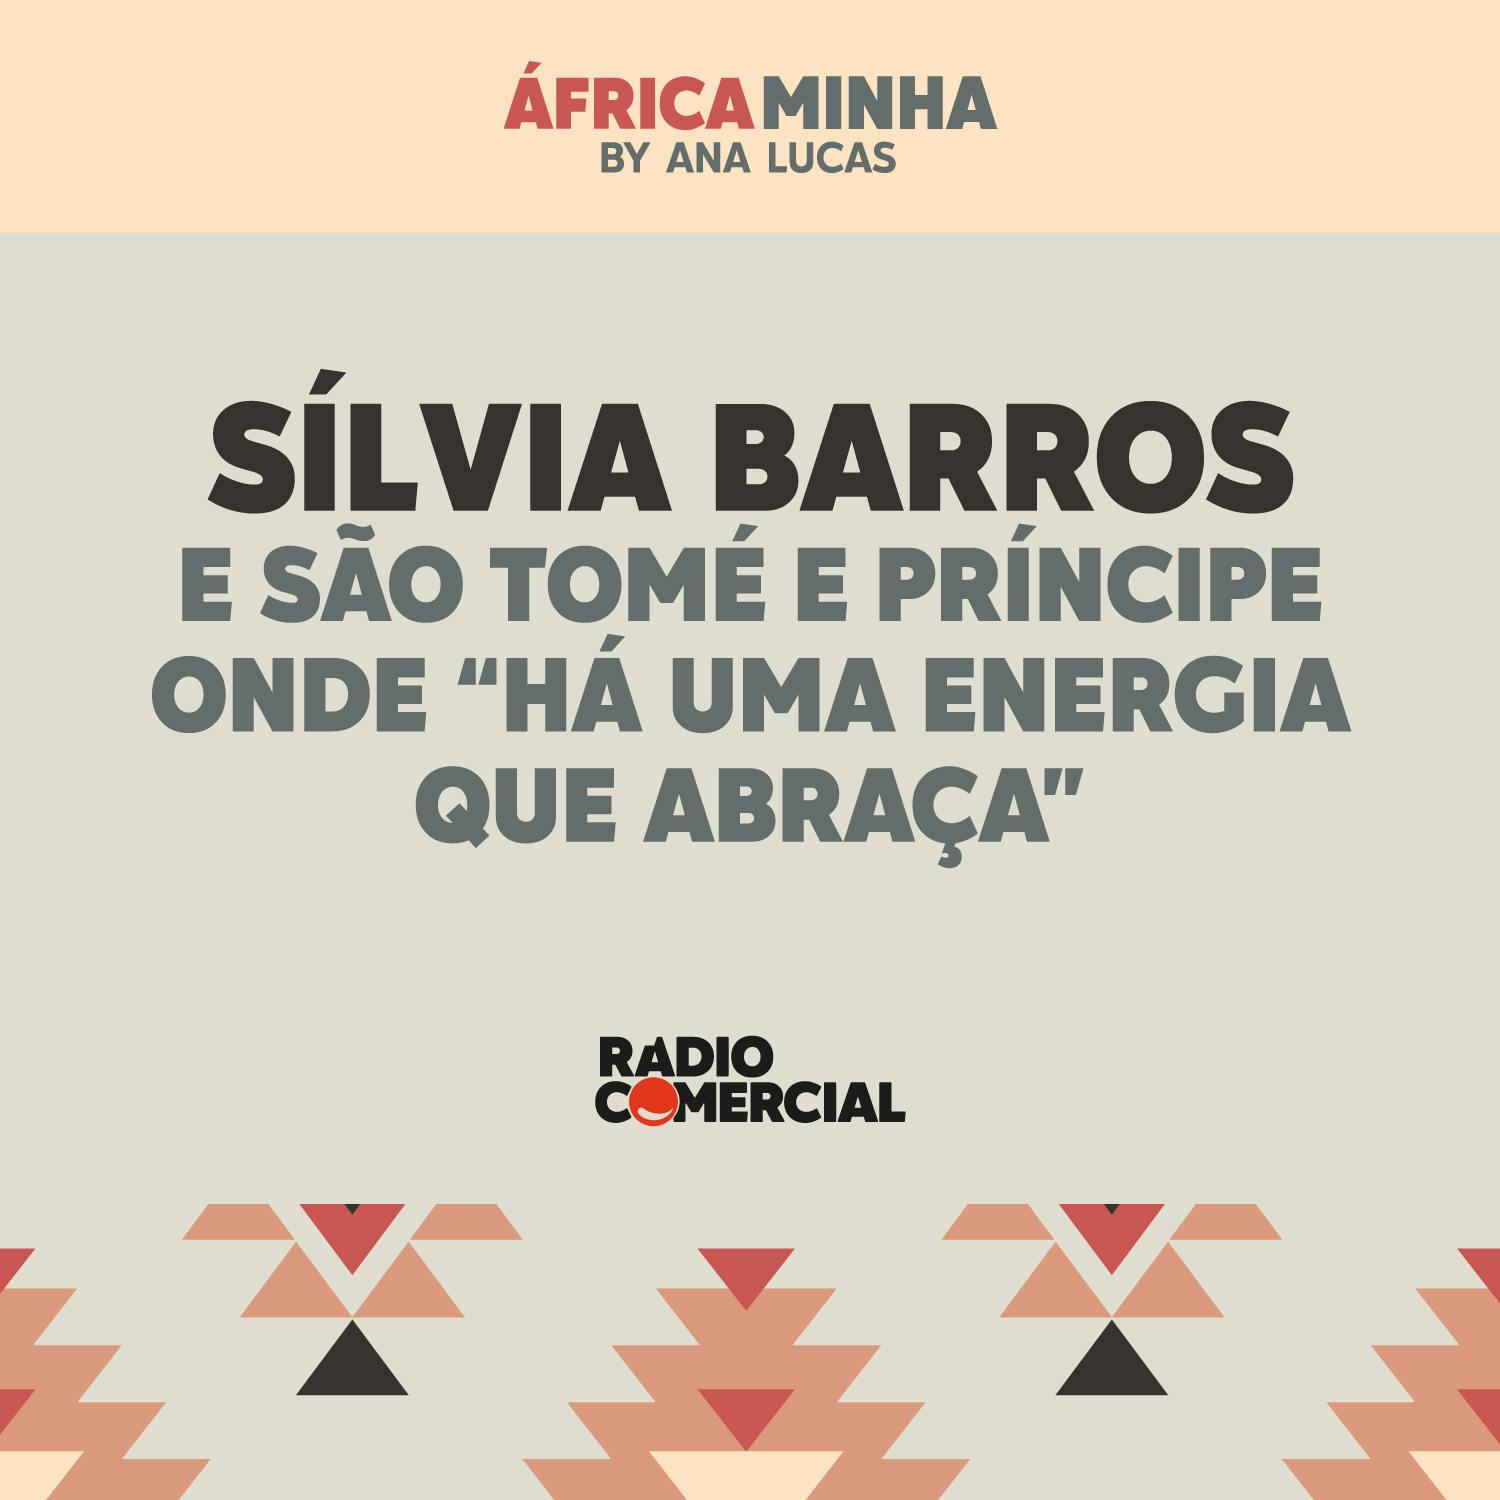 Sílvia Barros e São Tomé e Príncipe onde há "uma energia que te abraça"